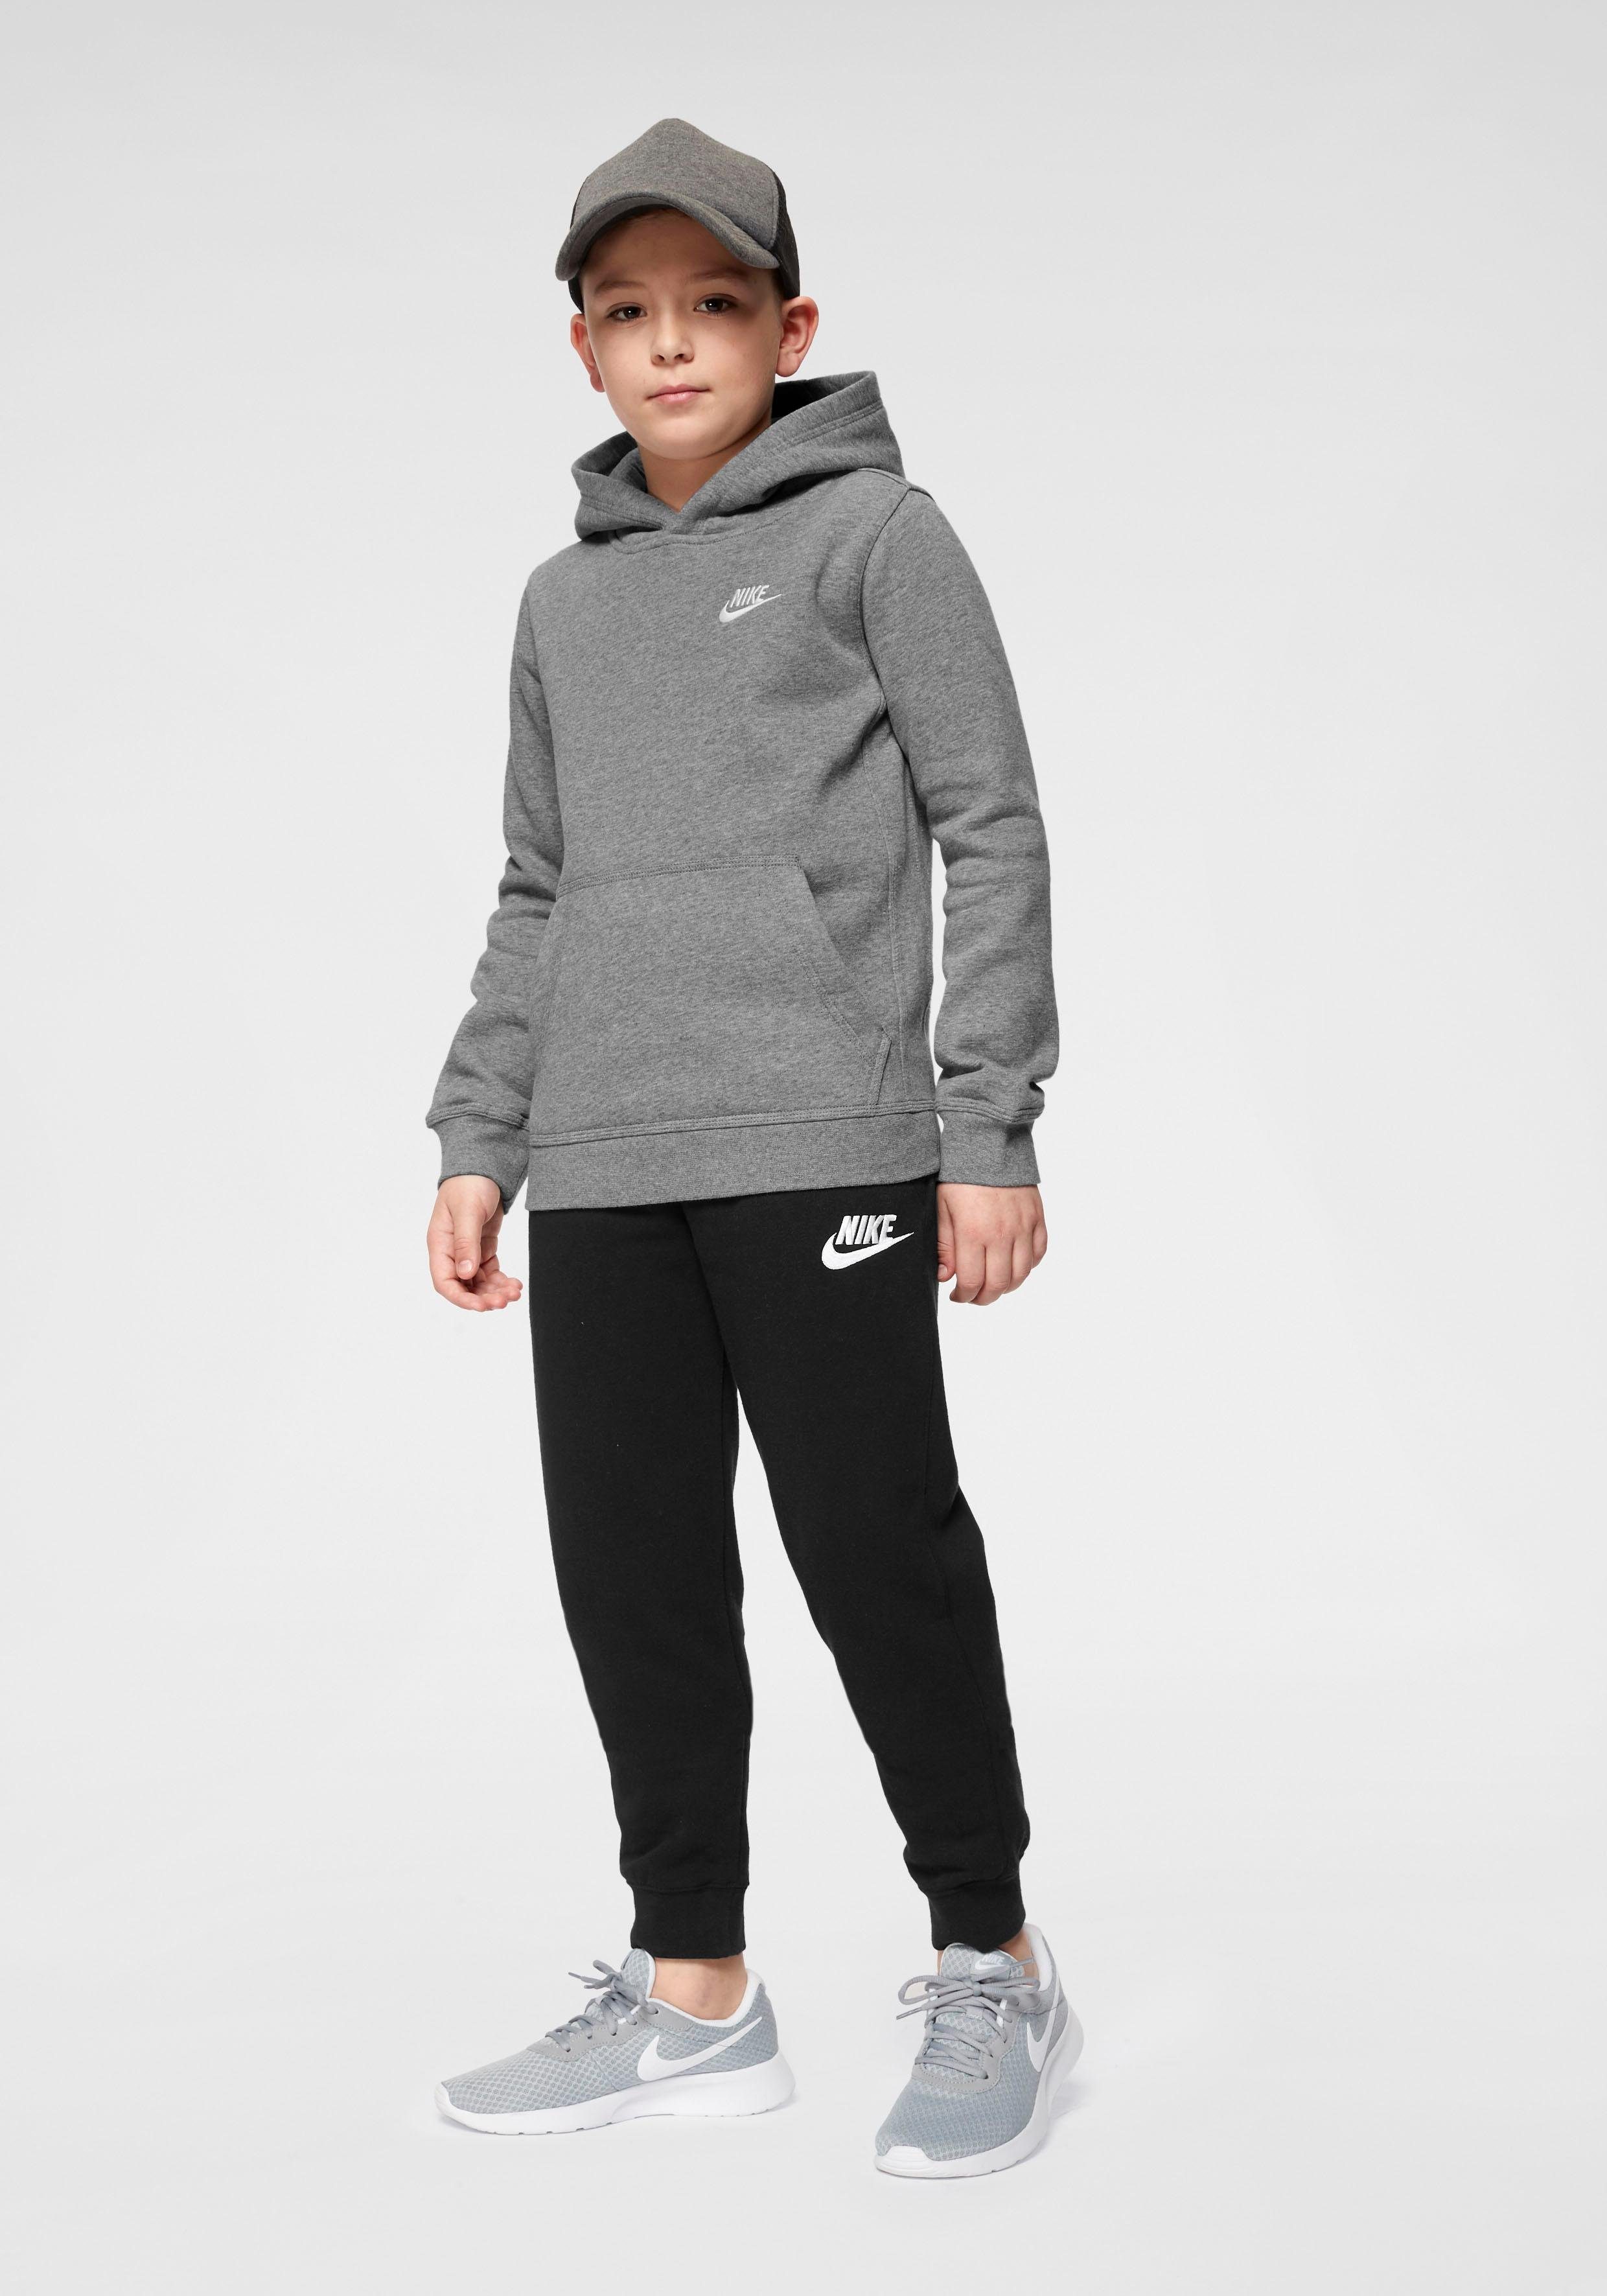 grau-meliert Hoodie Big Kids' Nike Kapuzensweatshirt Pullover Sportswear Club